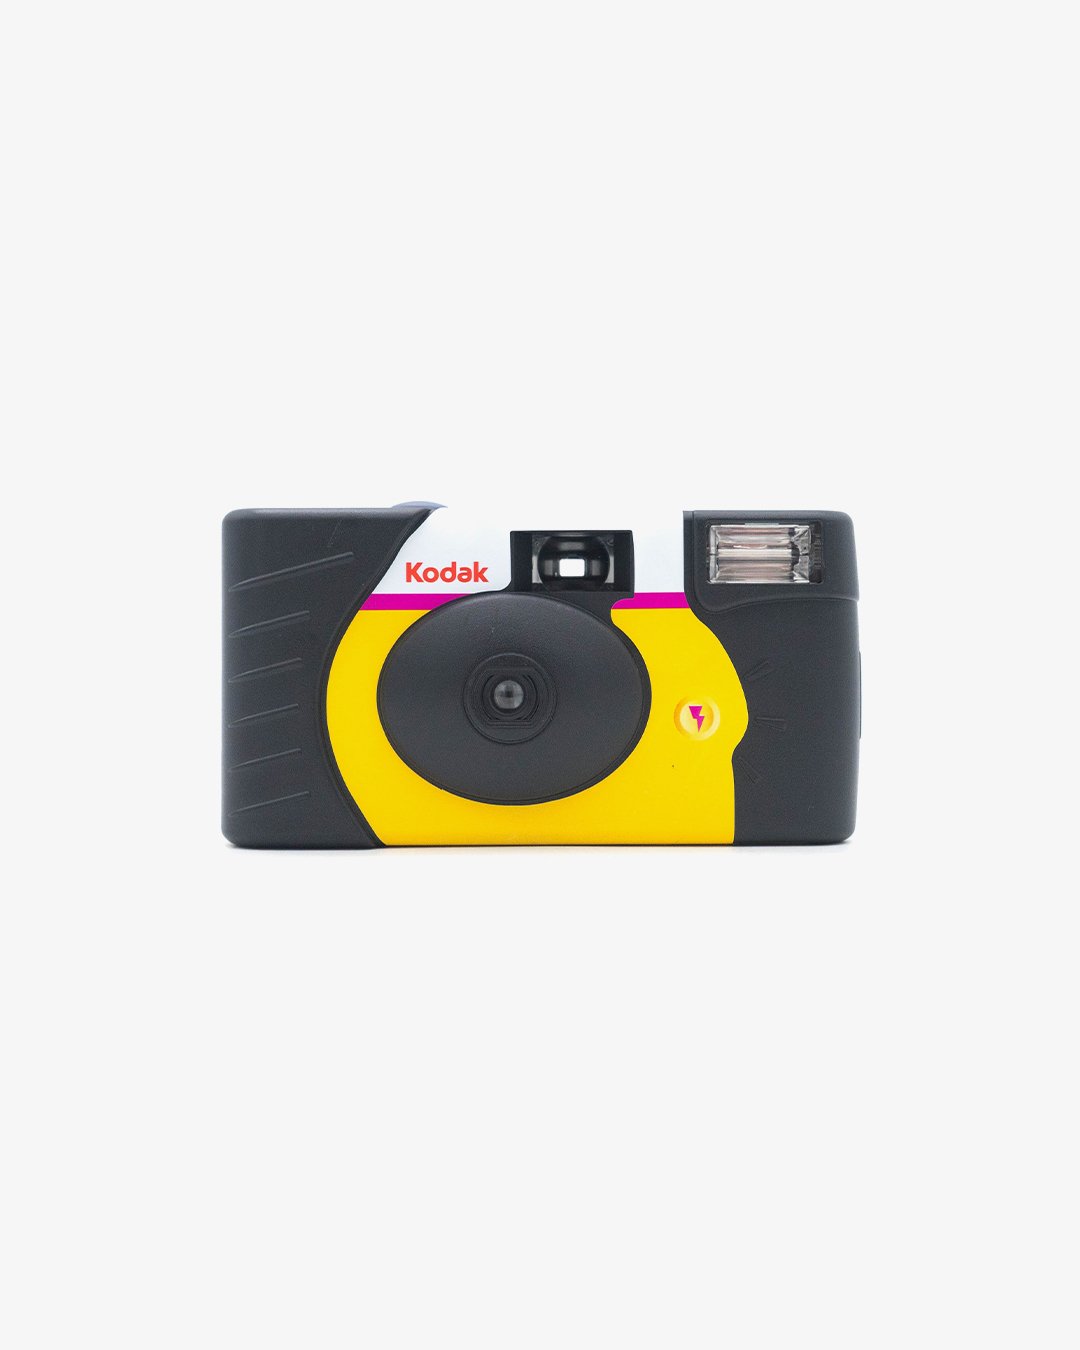 Kodak HD Power Flash Disposable Camera (35mm, 39 exp.)